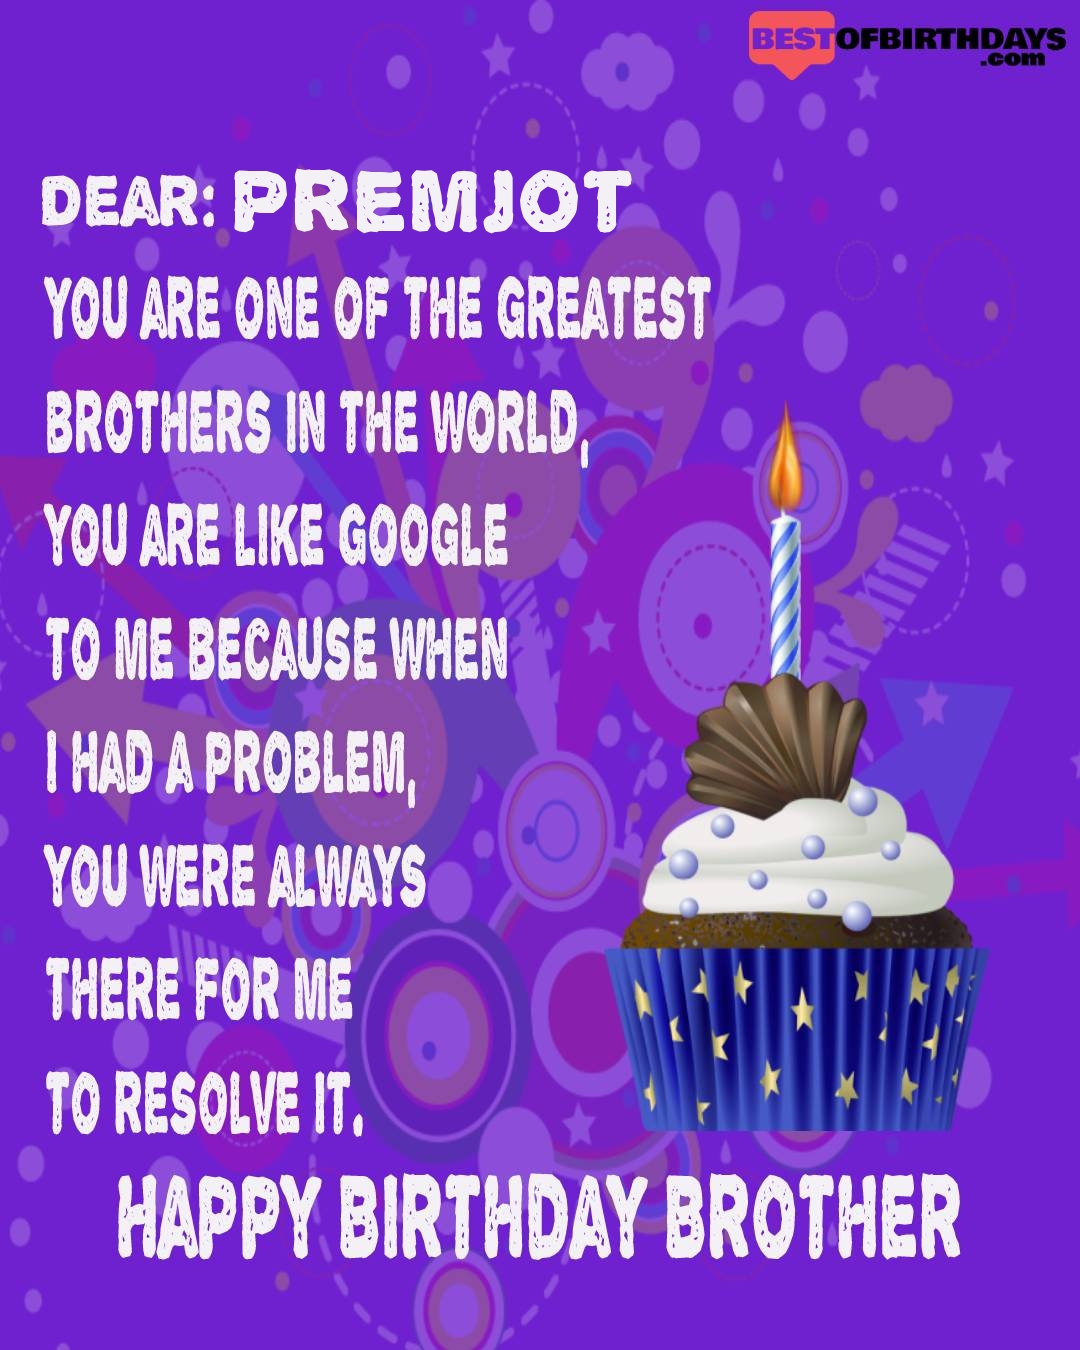 Happy birthday premjot bhai brother bro